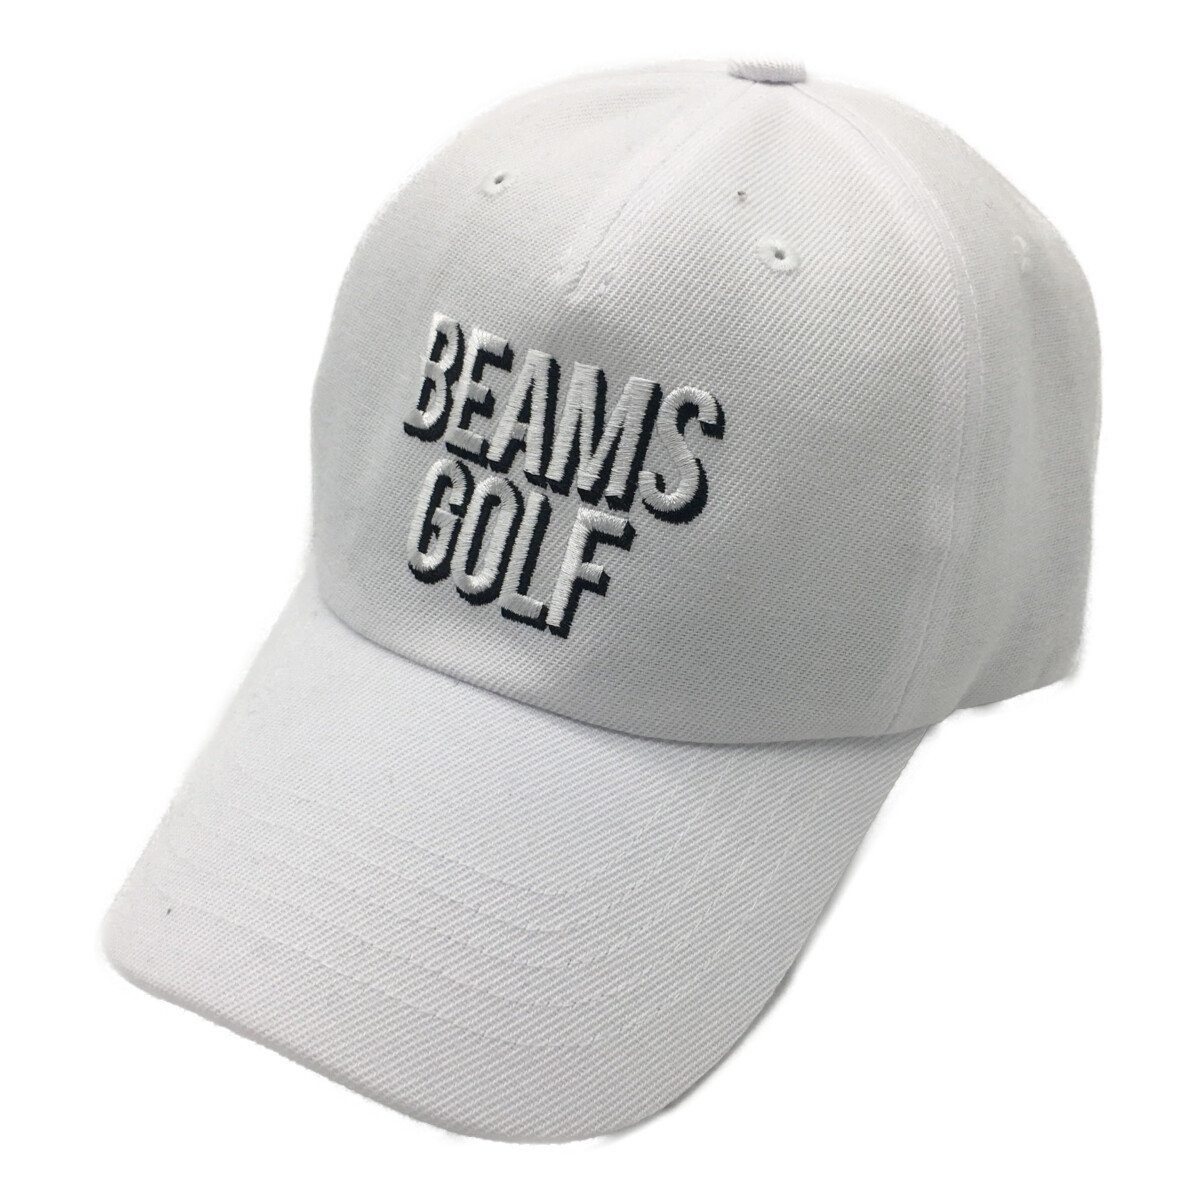 中古ゴルフウェアのBEAMS GOLF/ビームスゴルフを激安価格でお探しなら